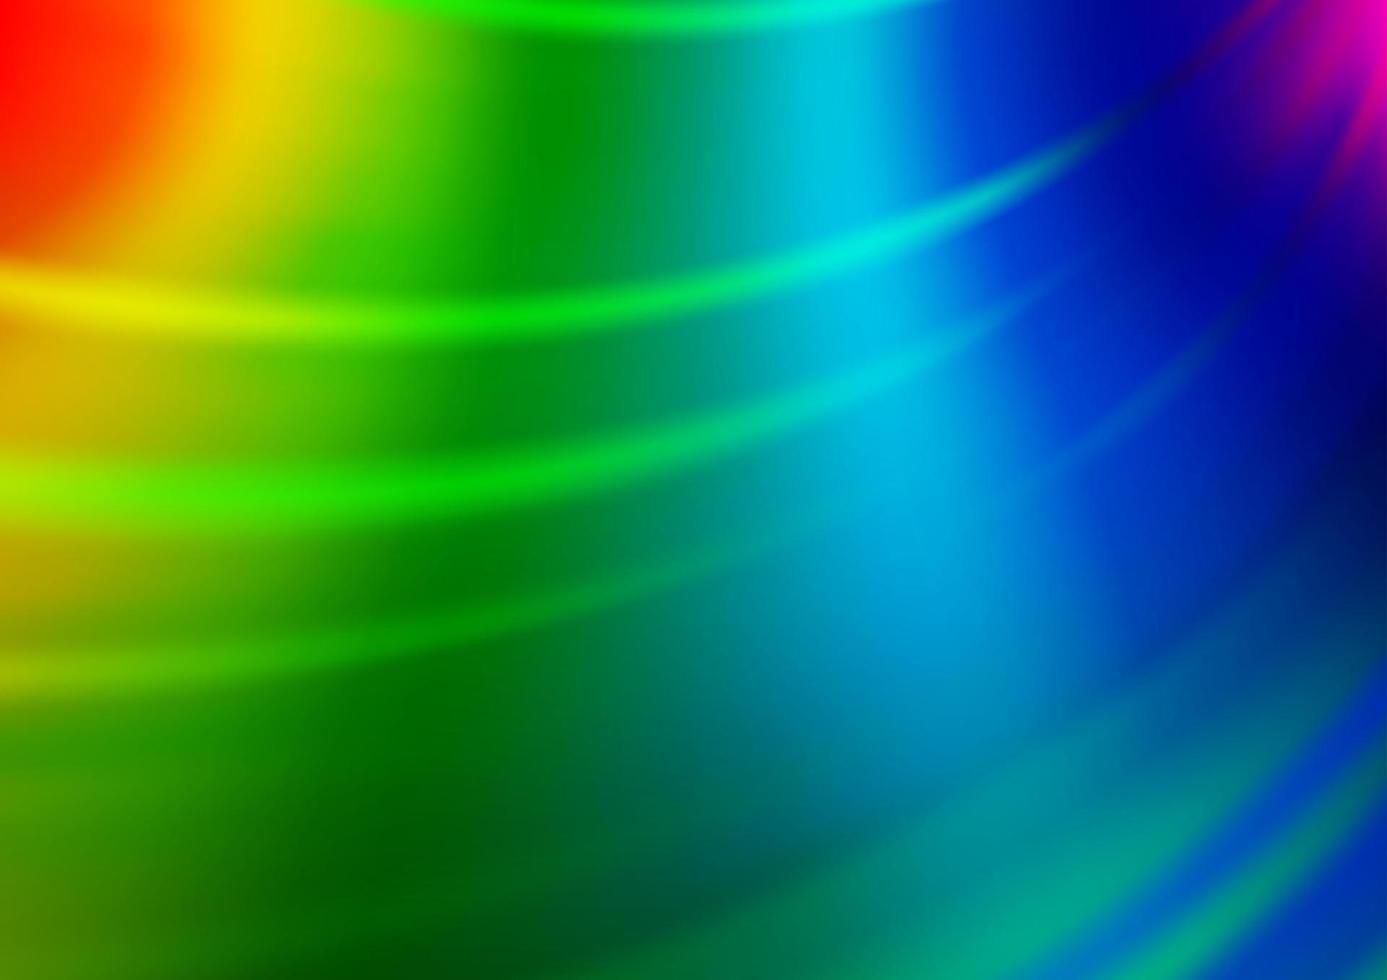 luz multicolor, fundo brilhante do sumário do vetor do arco-íris.